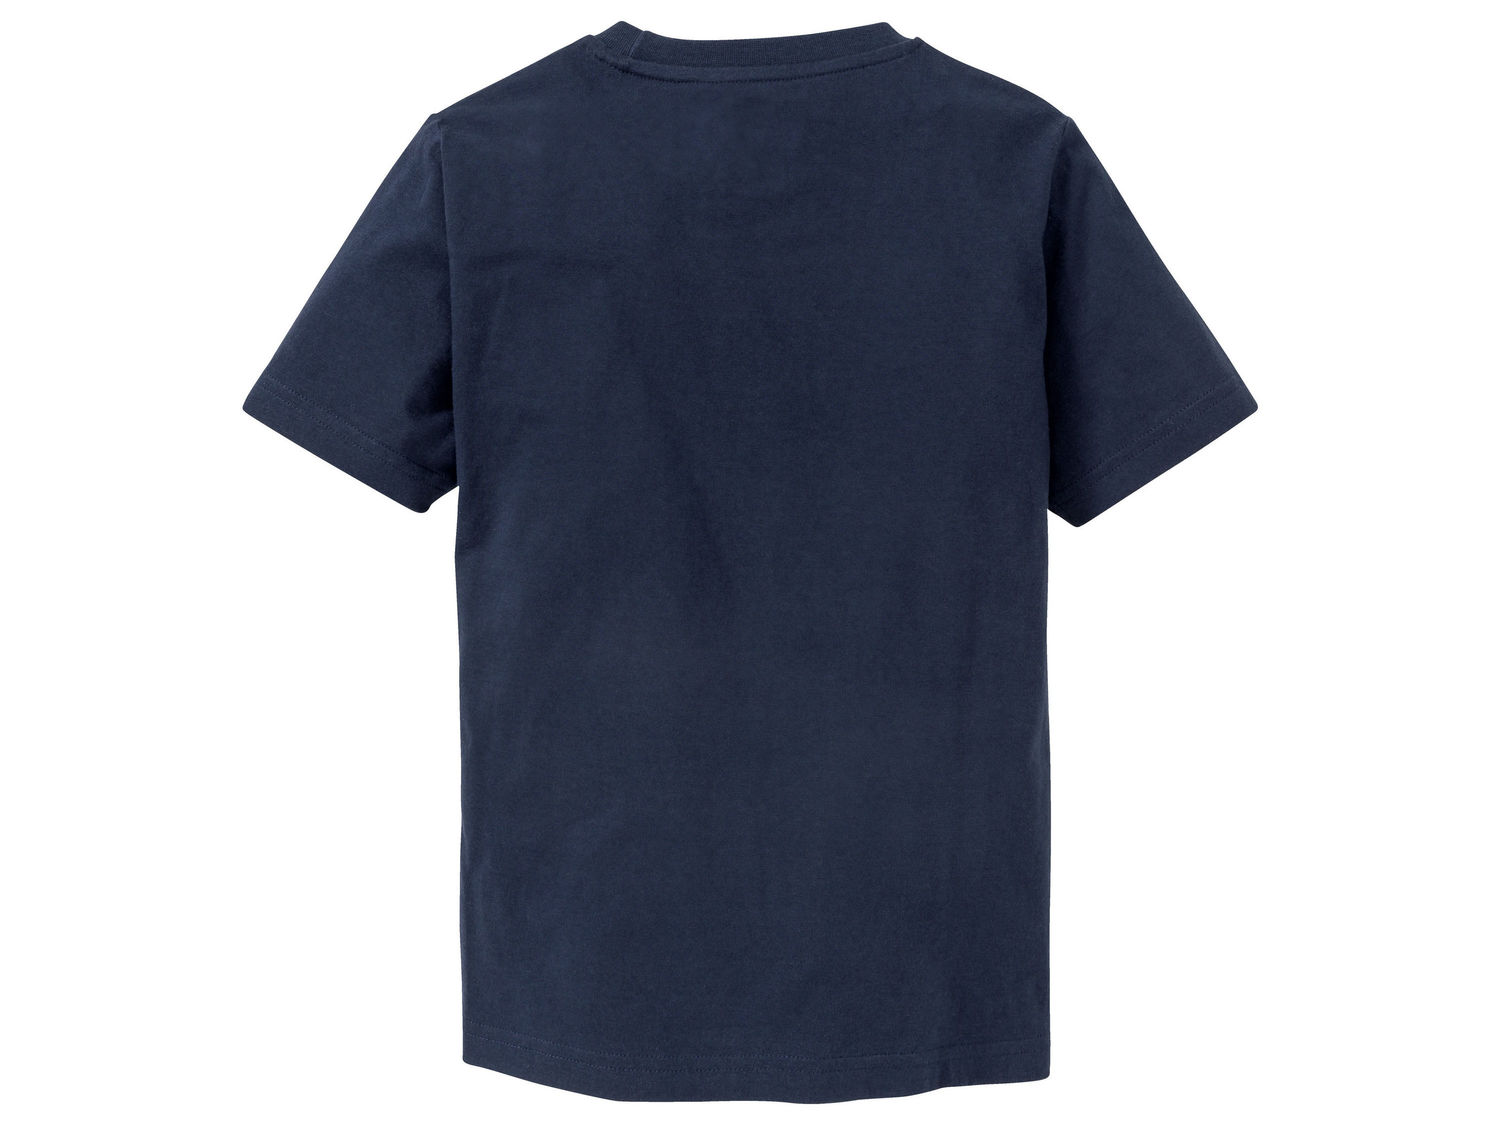 T-shirt Pepperts, cena 8,99 PLN 
- 100% bawełny
- rozmiary: 122-152
- wakacyjne ...